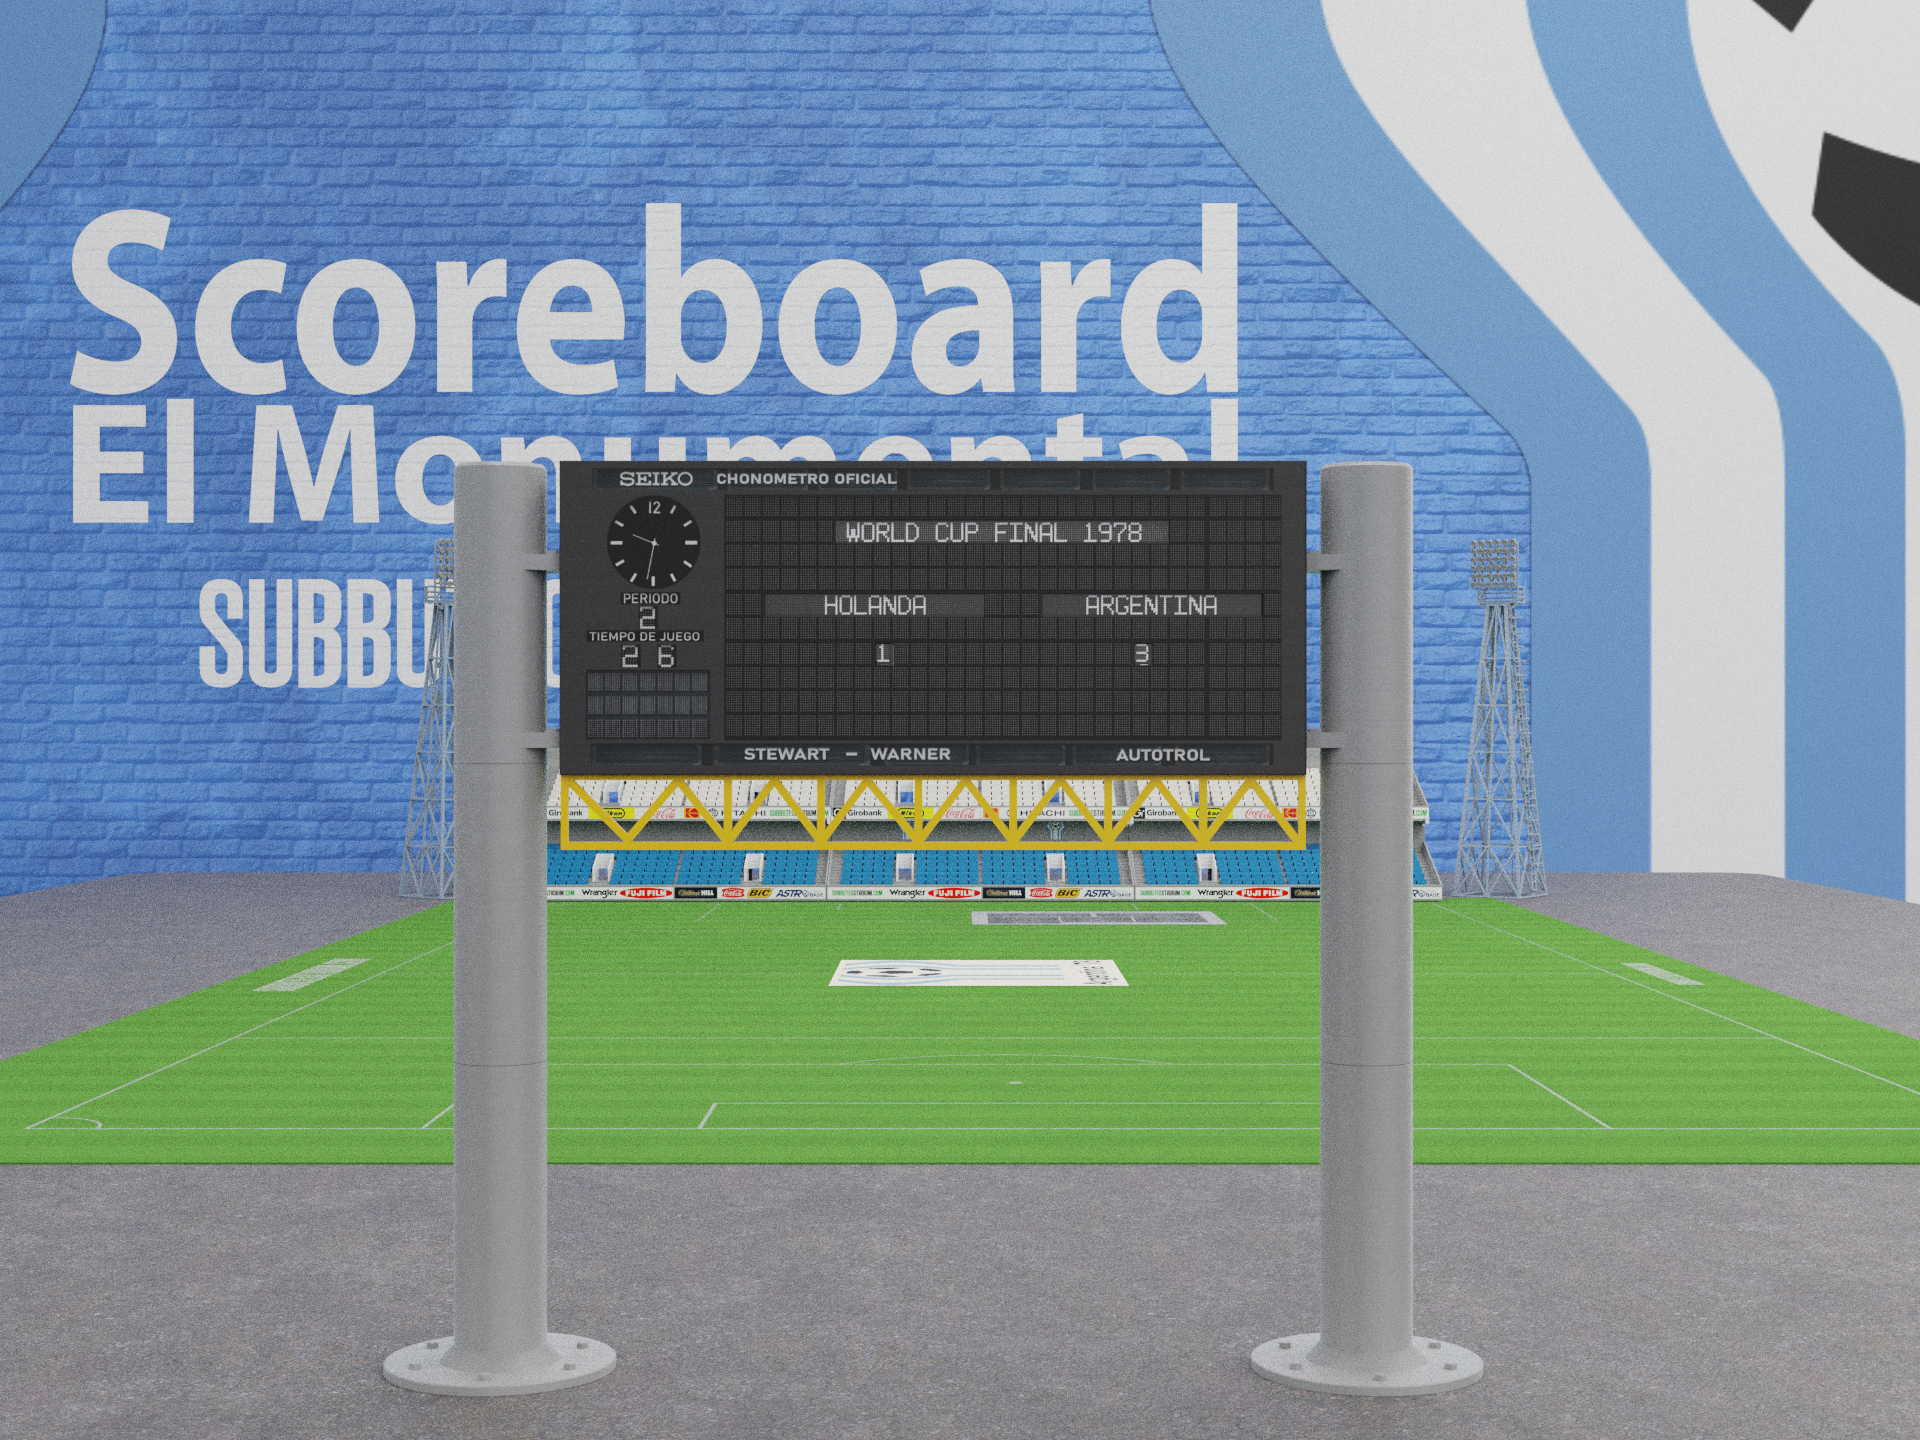 El Monumental scoreboard